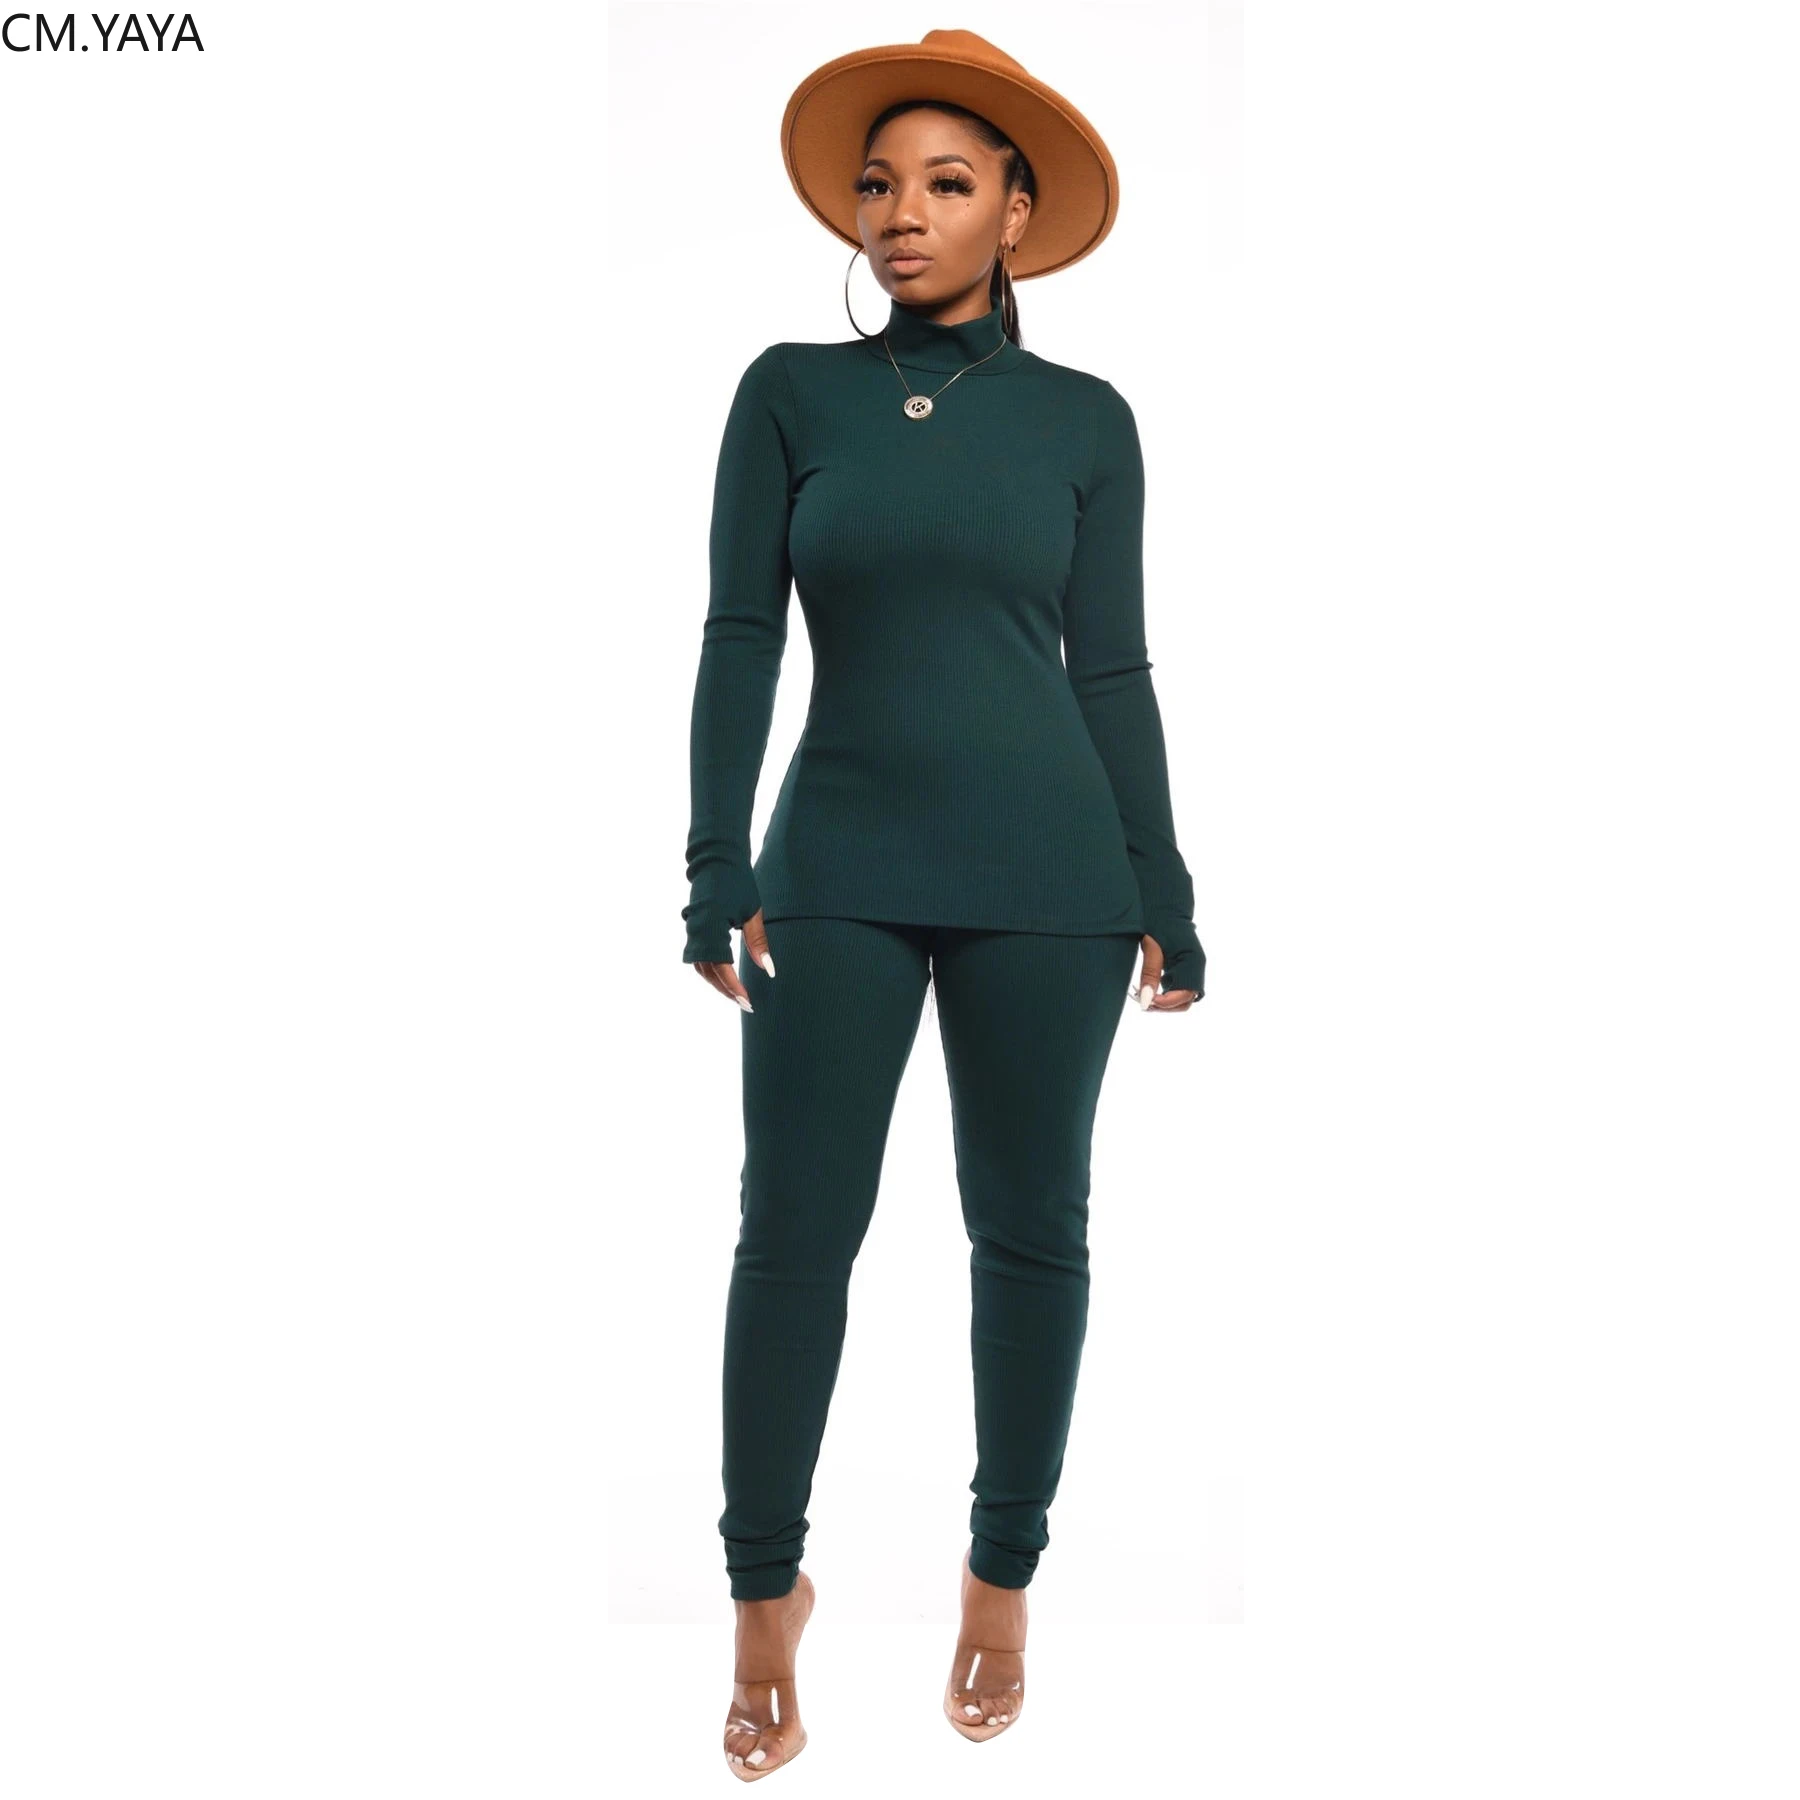 GL зимний женский комплект, спортивный костюм, водолазка, однотонный топ с длинным рукавом, леггинсы, штаны, комплект из двух предметов, повседневная спортивная одежда, CMCM632 - Цвет: Зеленый